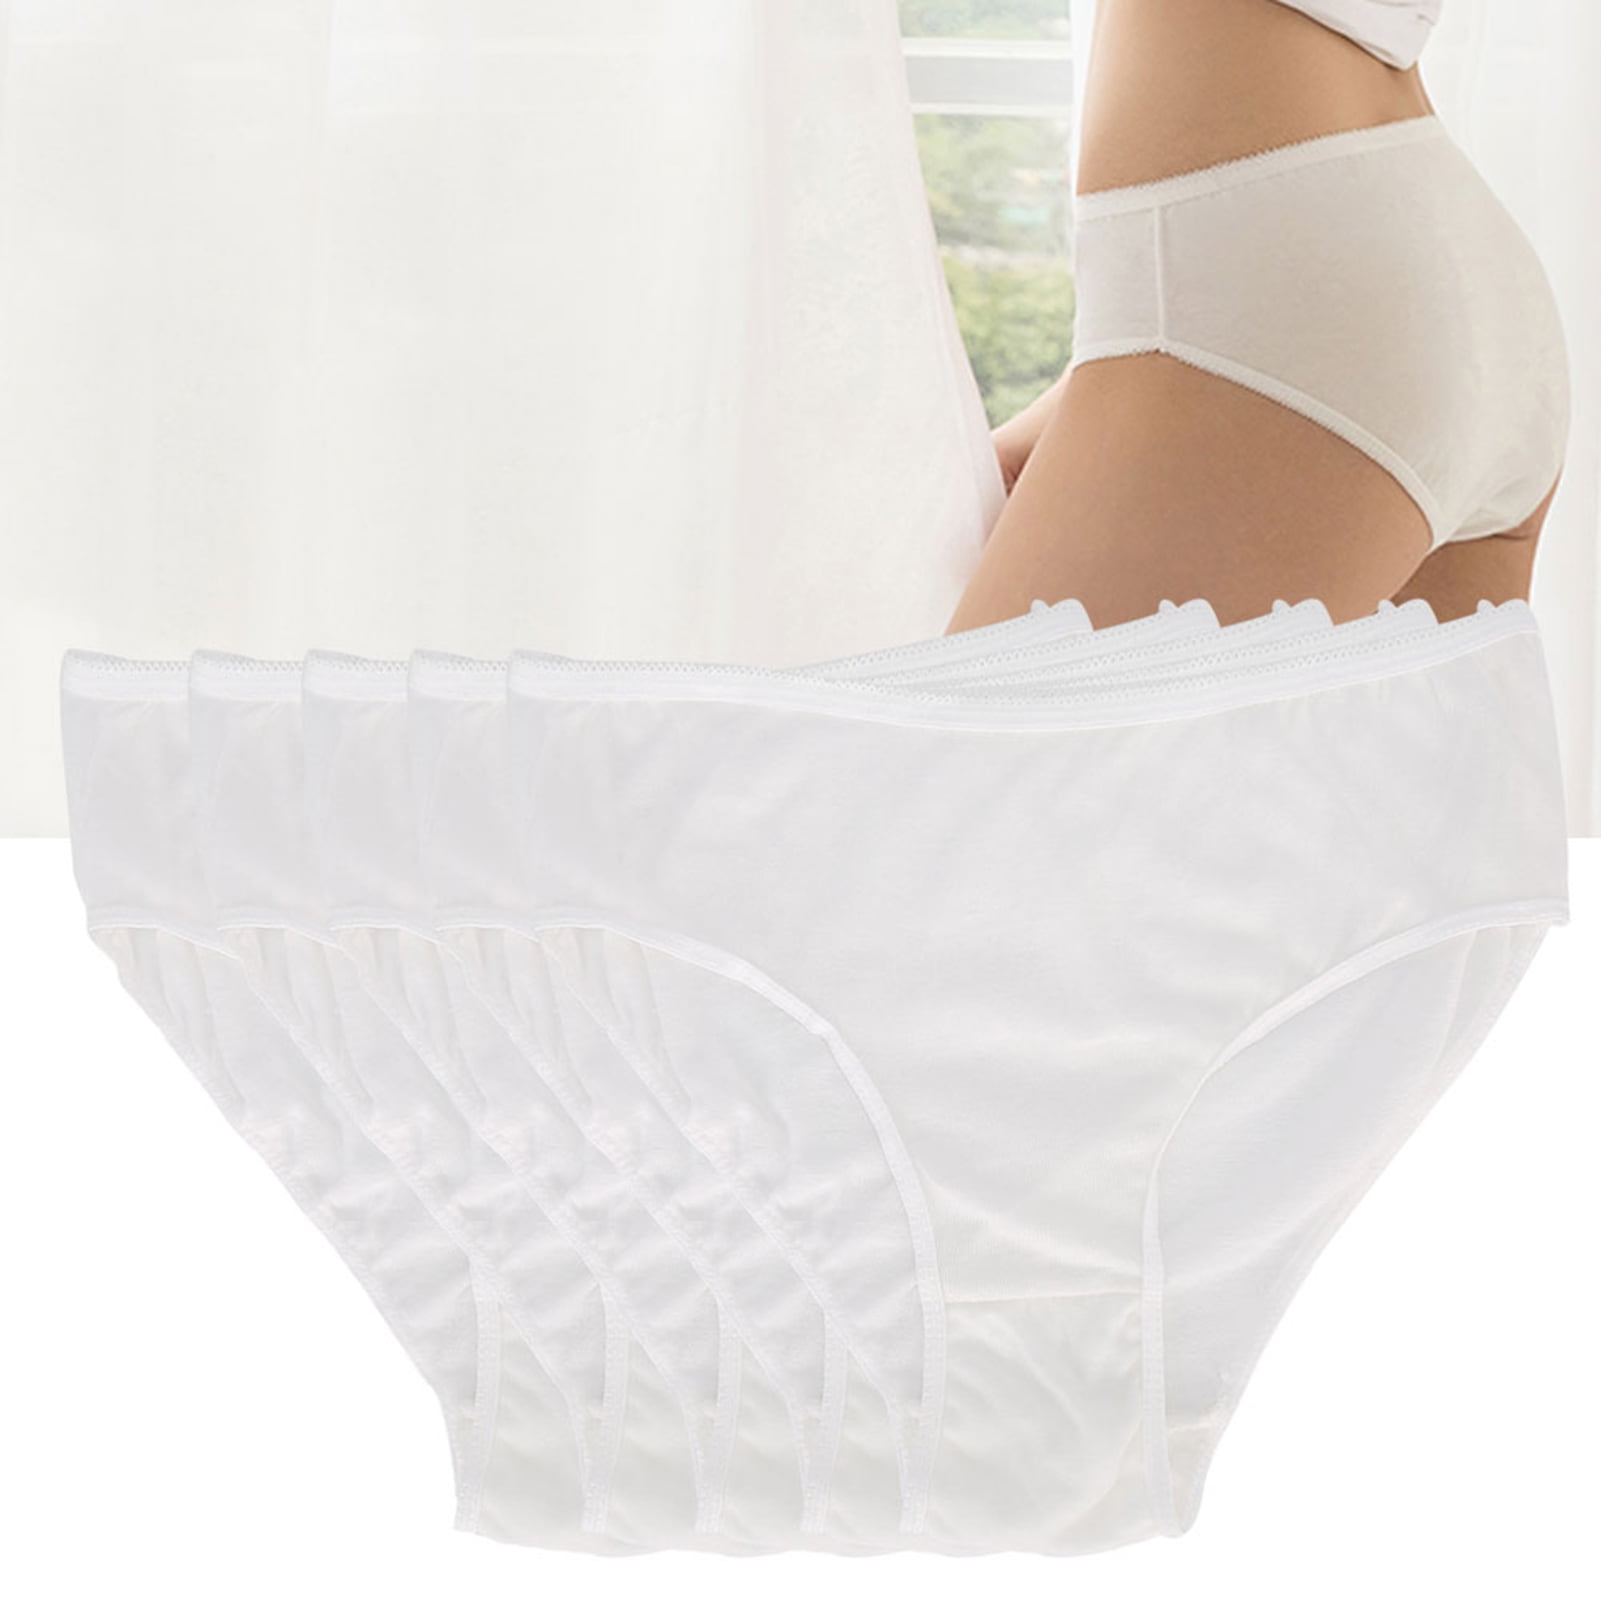 YATEMAO Hot Sale 5PCS Briefs Sterilized Disposable Underwear Maternity  Underwear cotton Postpartum Underwear Travel Panties - AliExpress